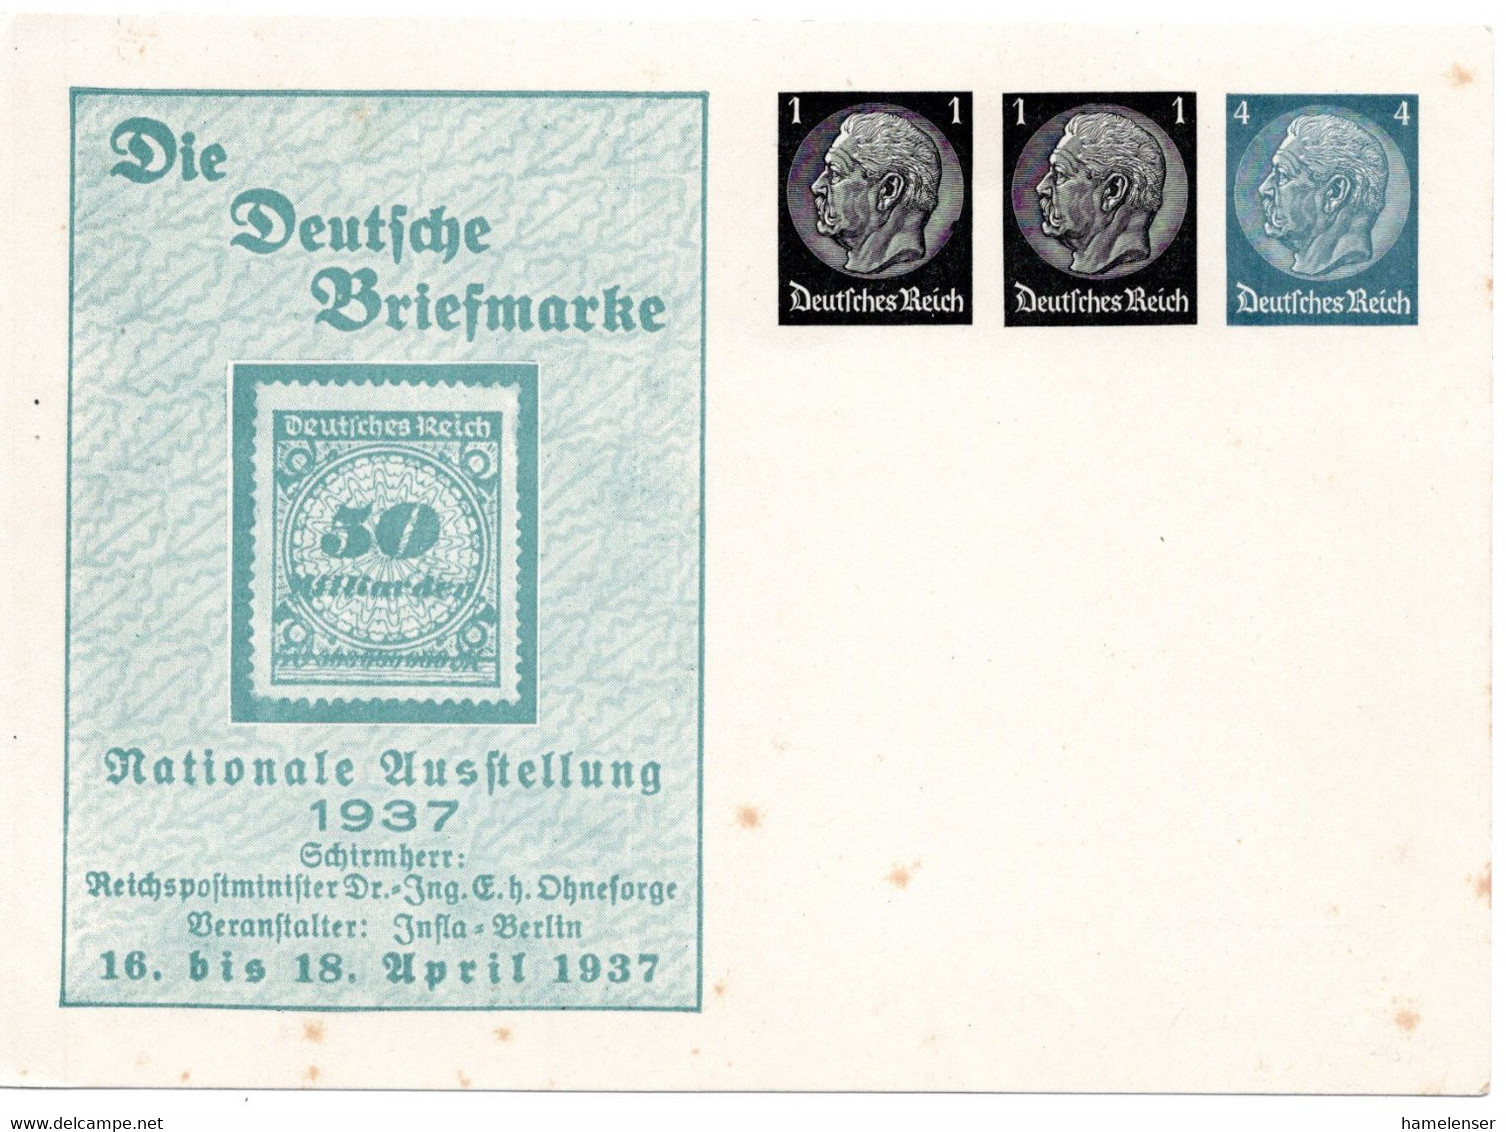 56183 - Deutsches Reich - 1937 - 1&1&4Pfg Hindenburg PGAKte "Die Deutsche Briefmarke", Ungebraucht, Etw Stockig - Briefmarken Auf Briefmarken